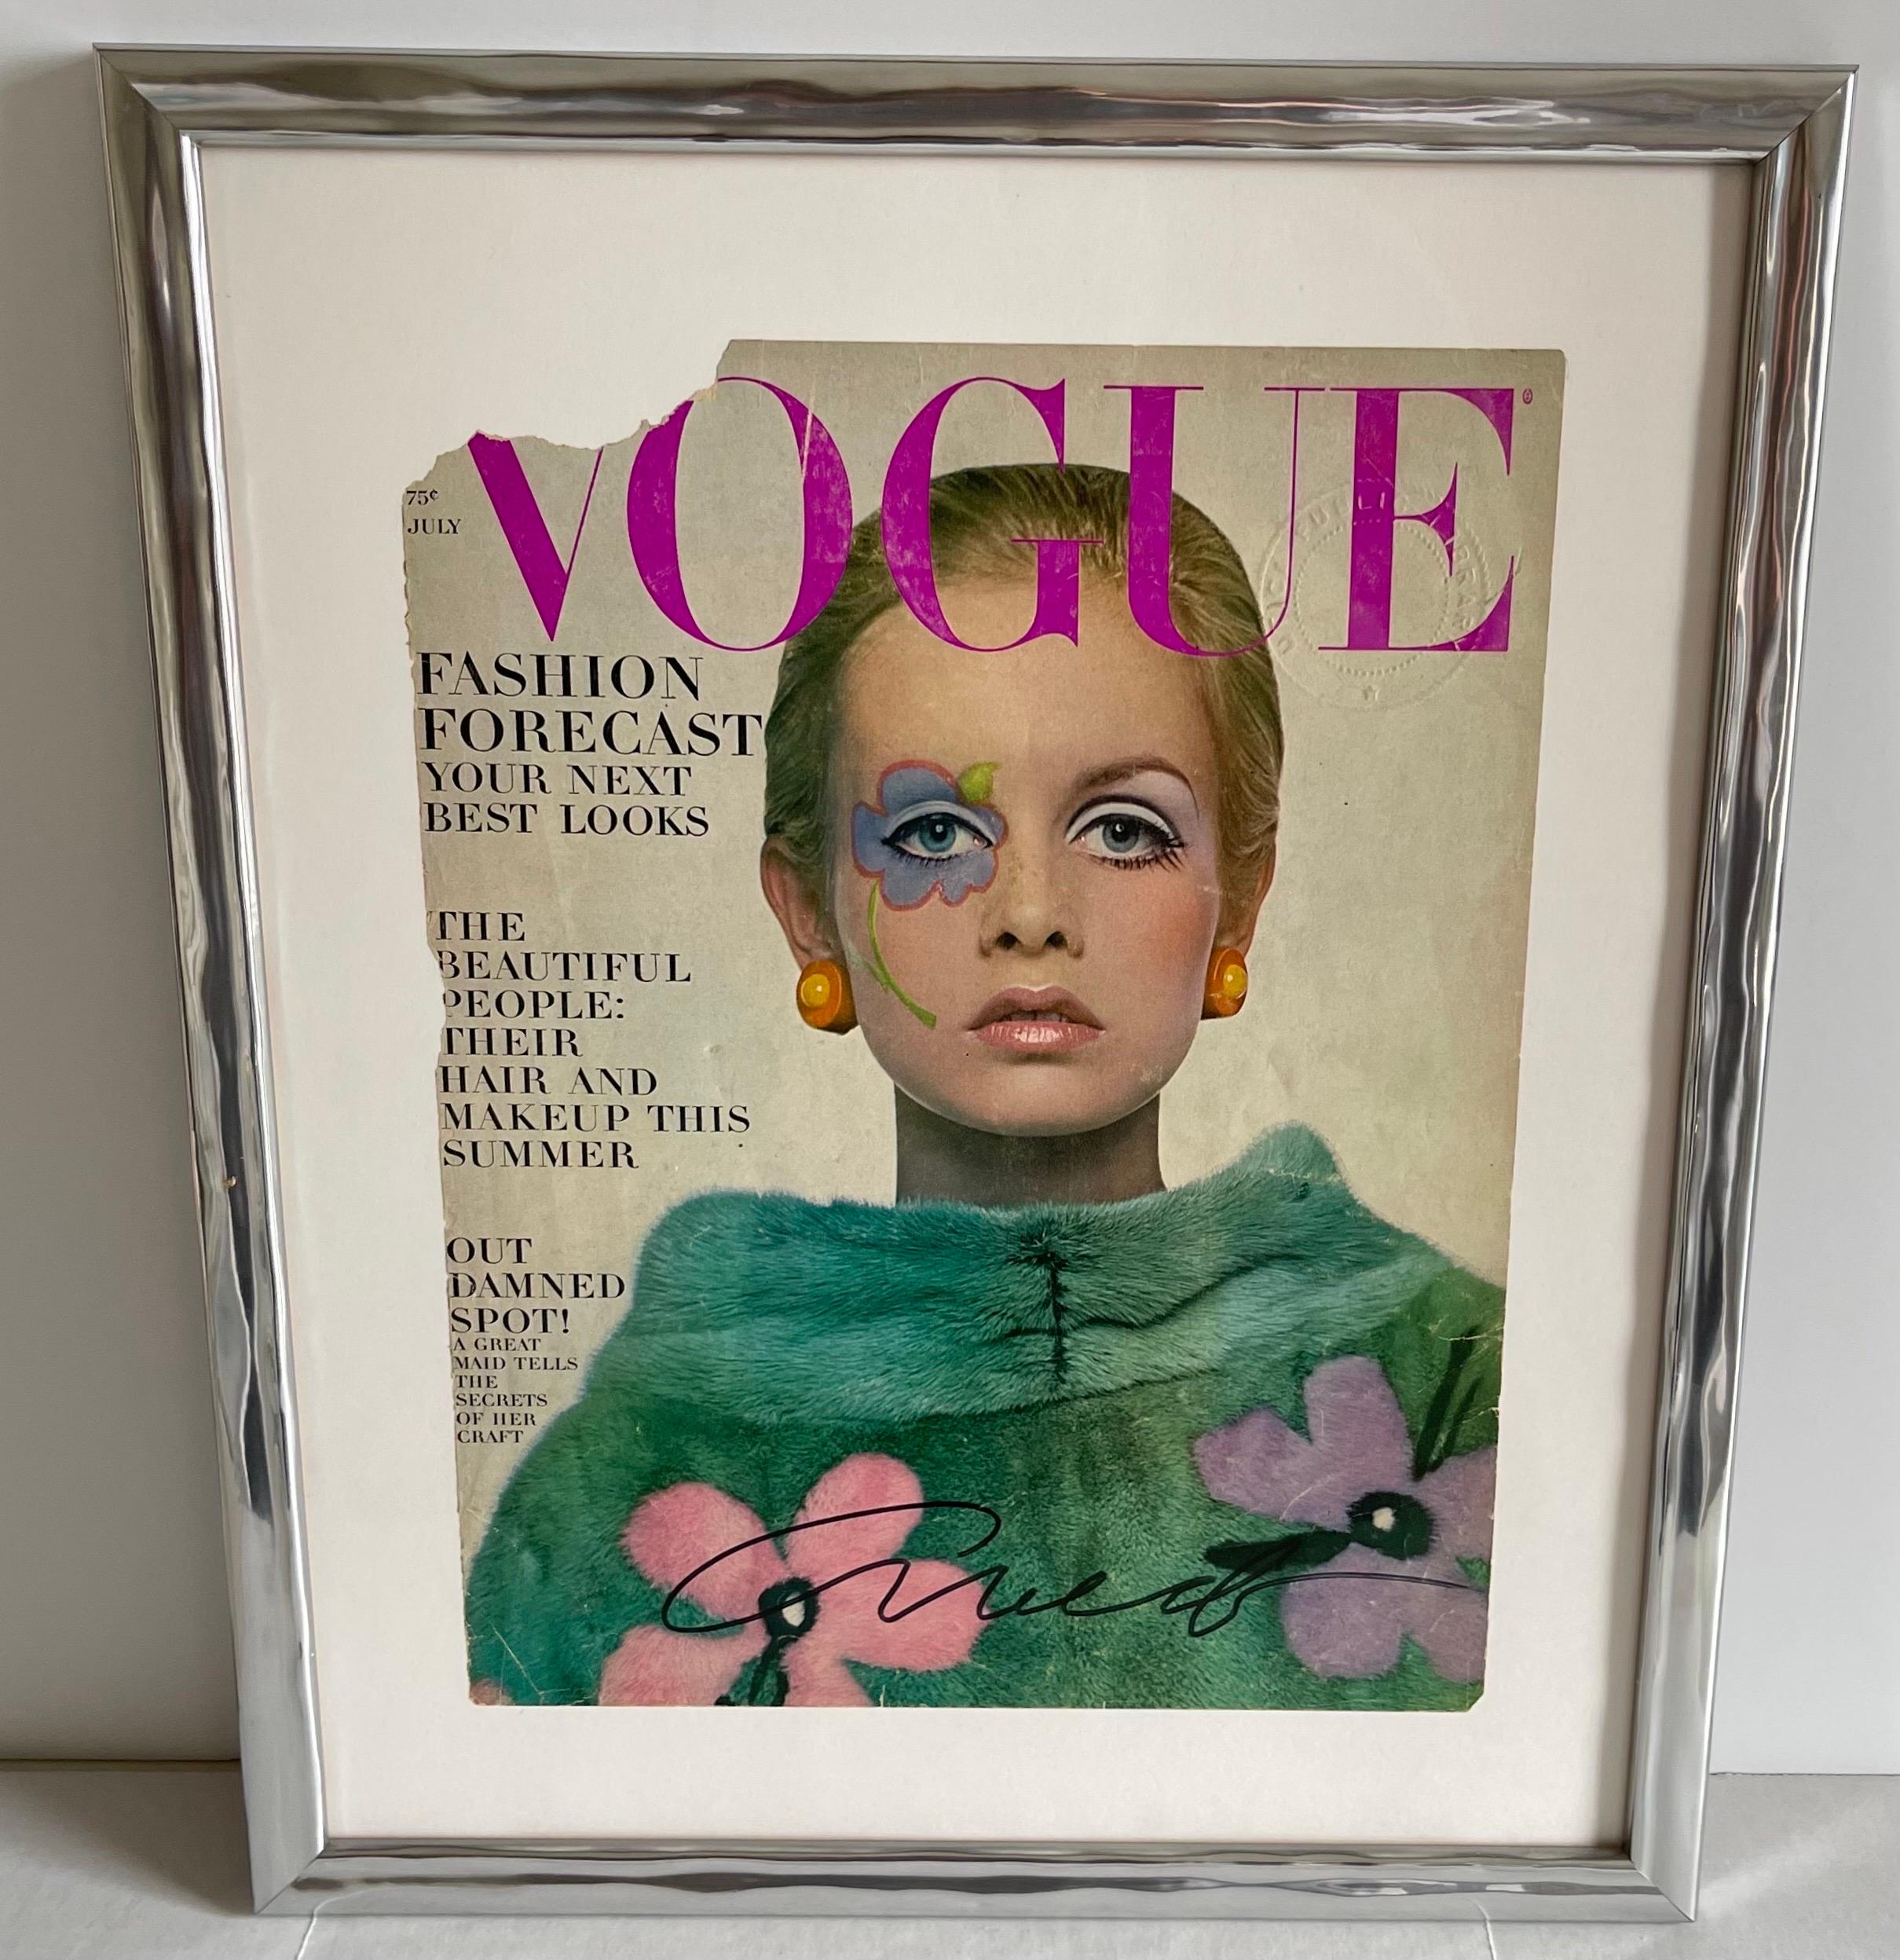 Couverture de Vogue Juillet 1967 Twiggy signée par Richard Avedon. Couverture Ex-Libris en condition originale signée au marqueur noir par Richard Avedon. Nouveau passe-partout et encadrement dans un cadre en bois sculpté argenté.